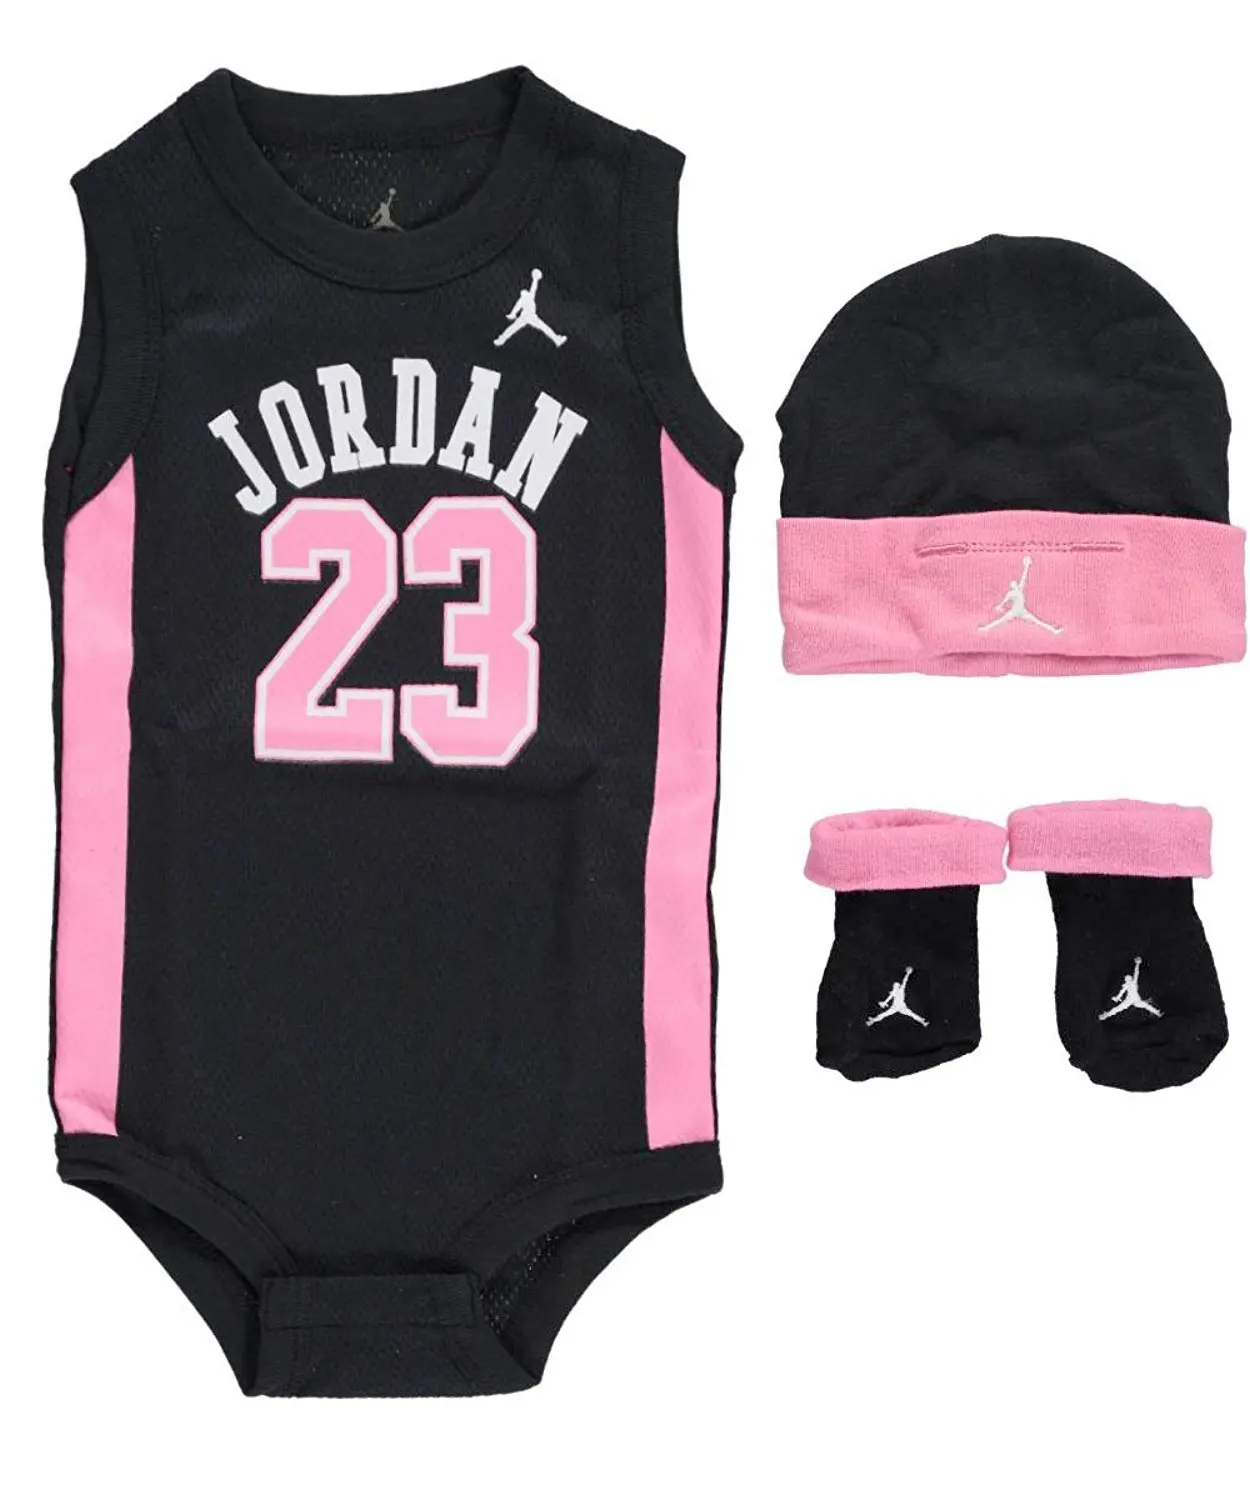 Buy Jordan Baby Clothes 3 Piece 